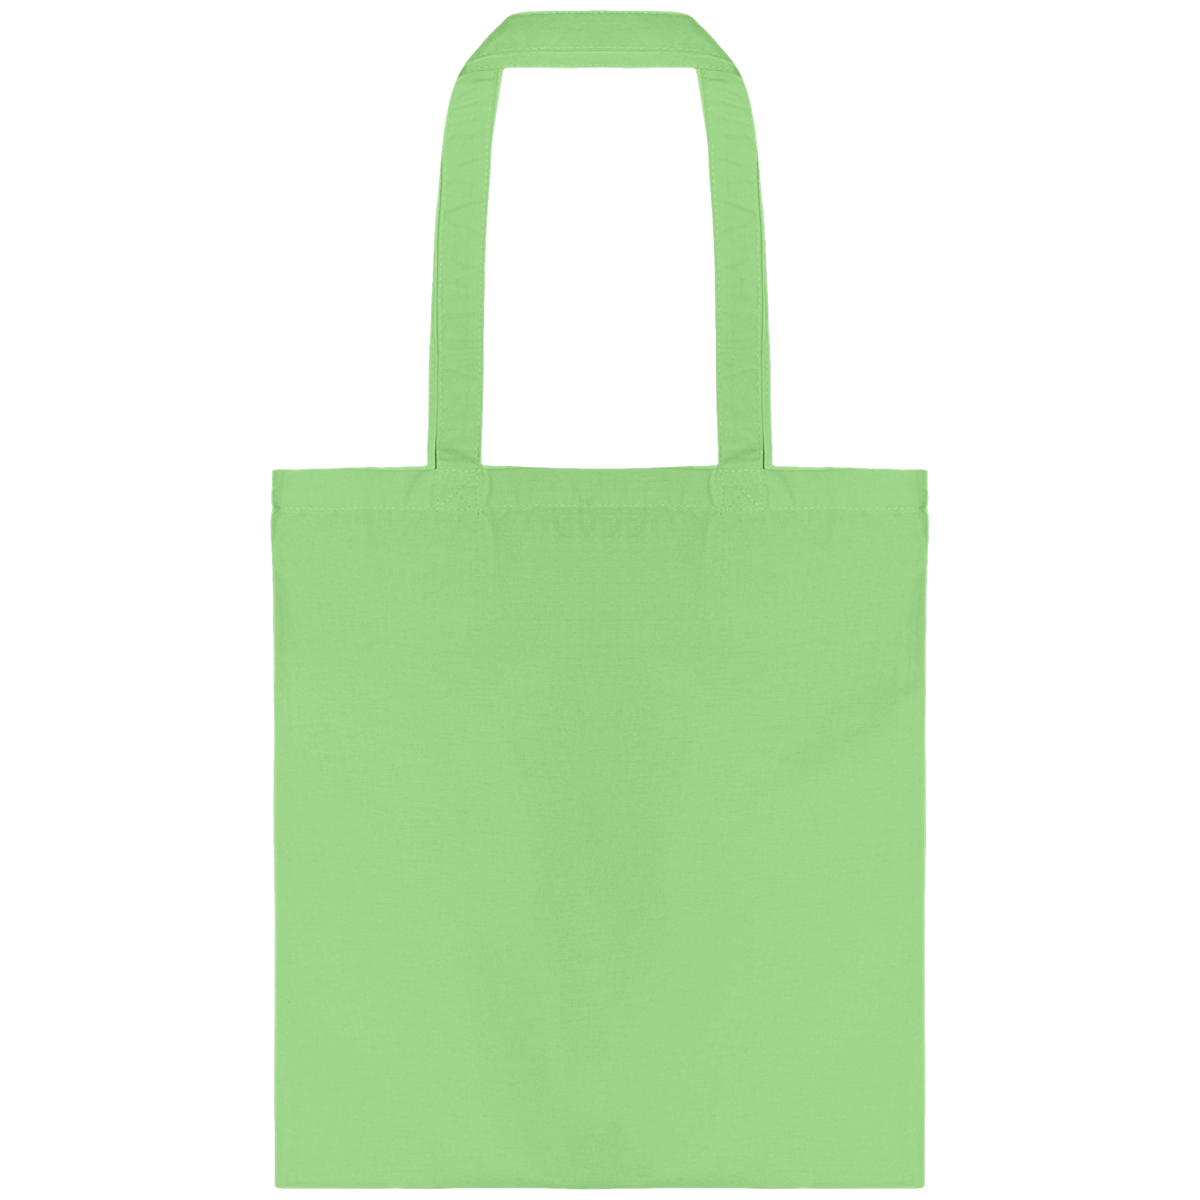 Personnalisez Votre Tote Bag Avec Tunetoo Pistachio Green